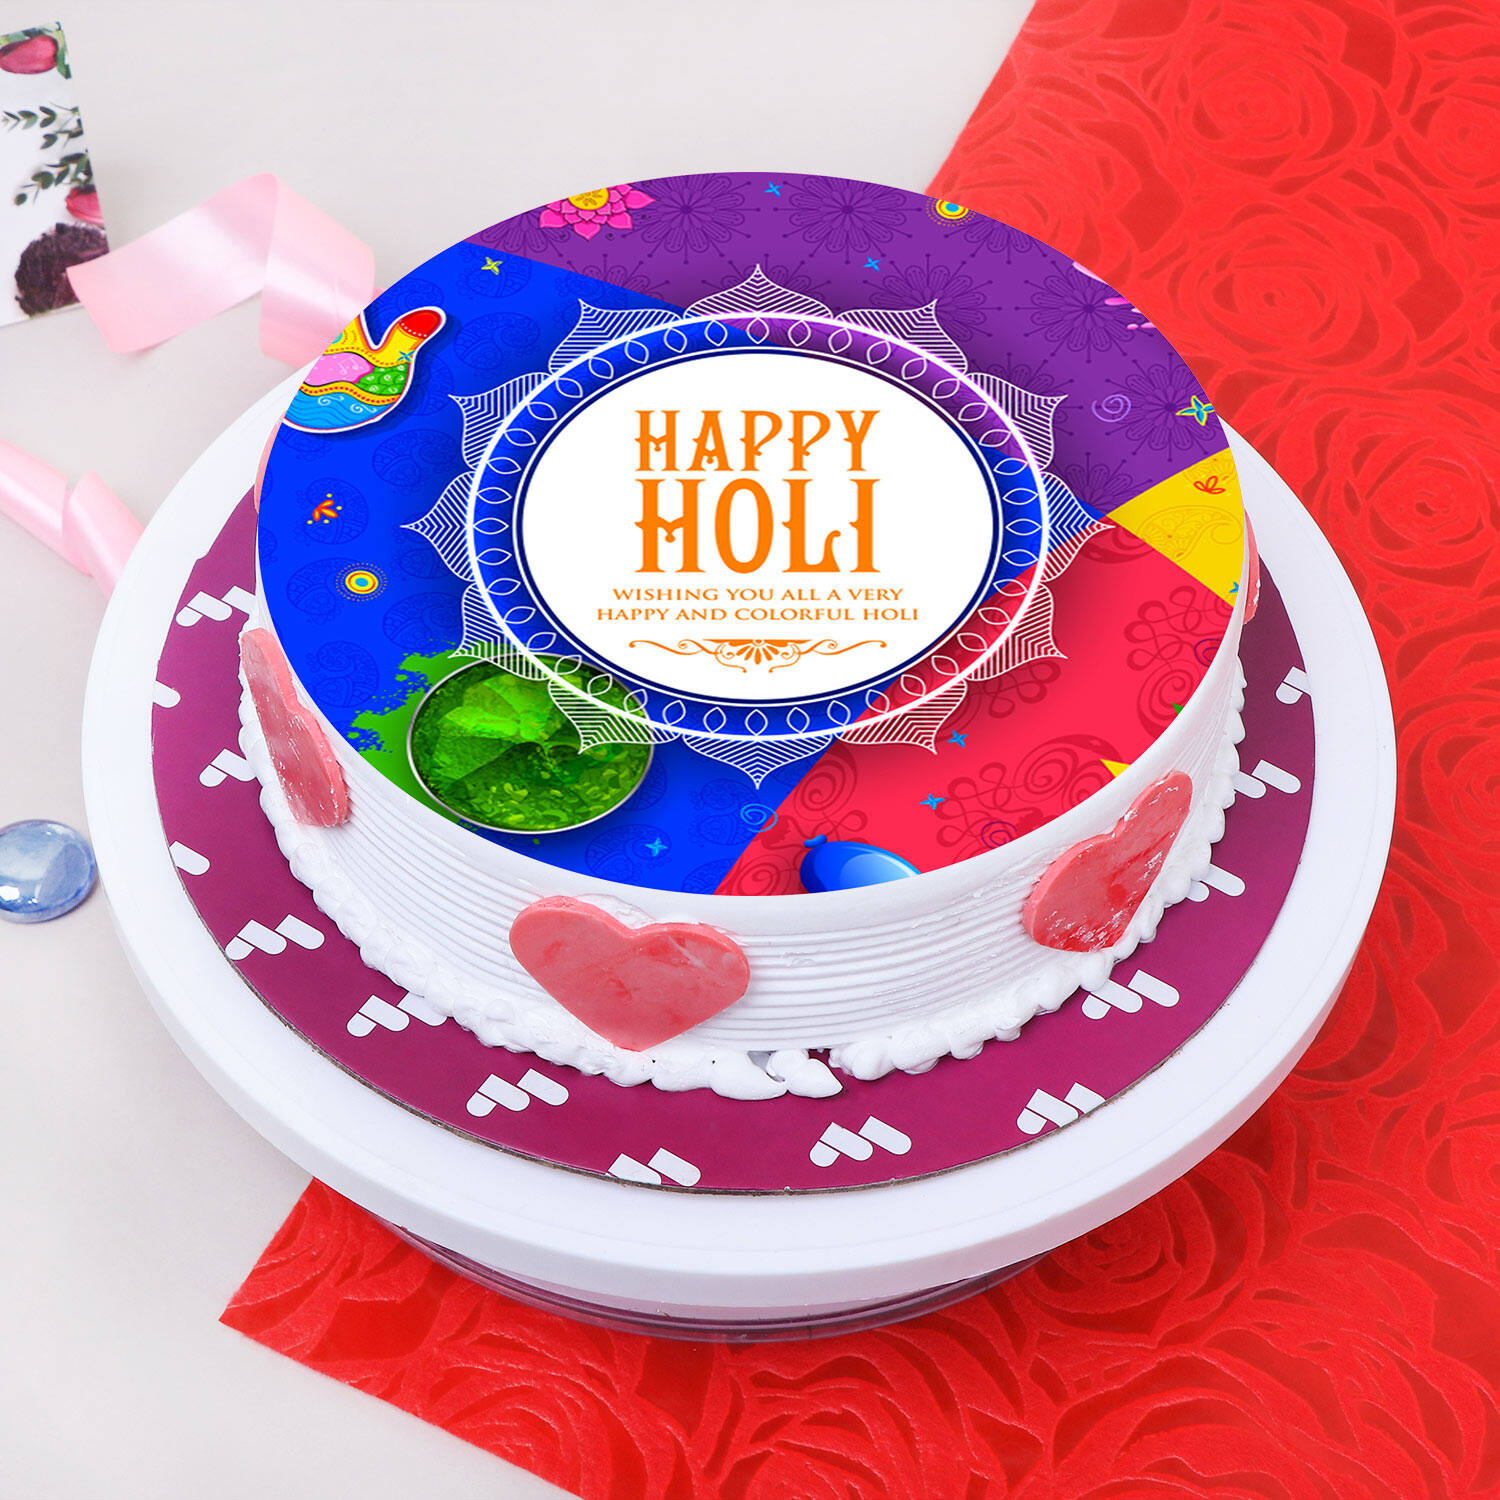 Holi Cake Gift Ideas